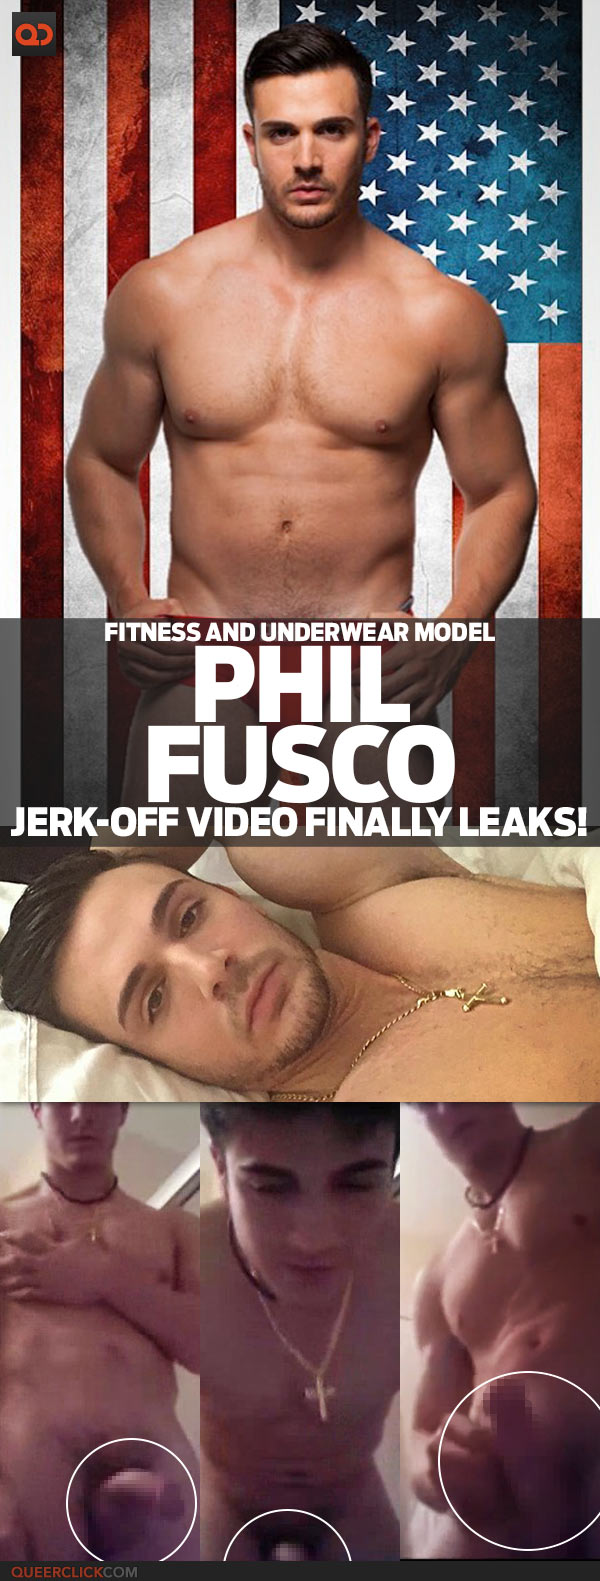 Phil Fusco, Fitness And Underwear Model, Jerk-Off Video Finally Leaks!